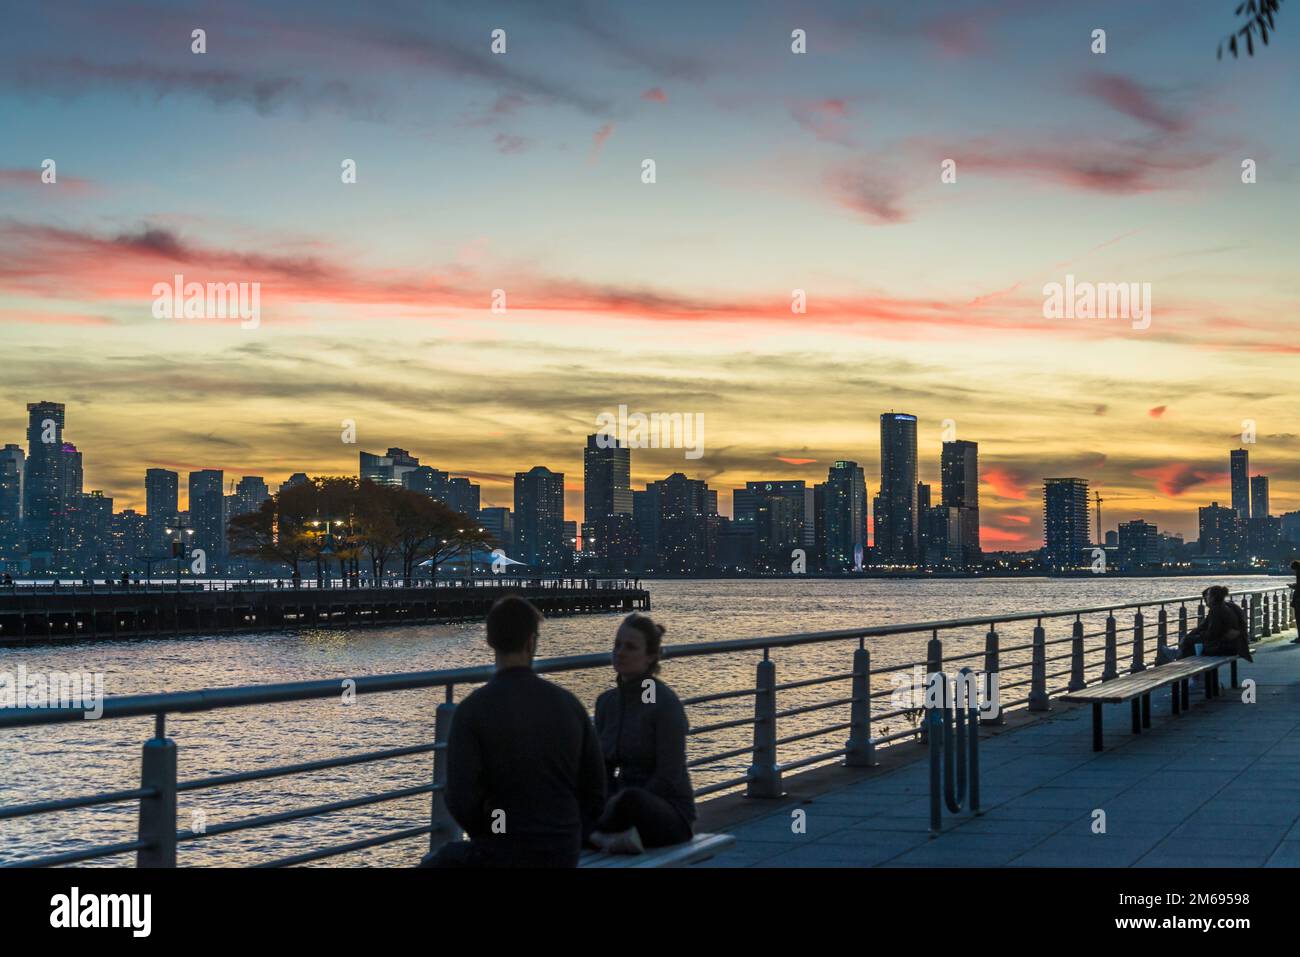 Vue sur l'Hudson River et le New Jersey depuis Lower Manhattan au coucher du soleil, New York City, États-Unis Banque D'Images